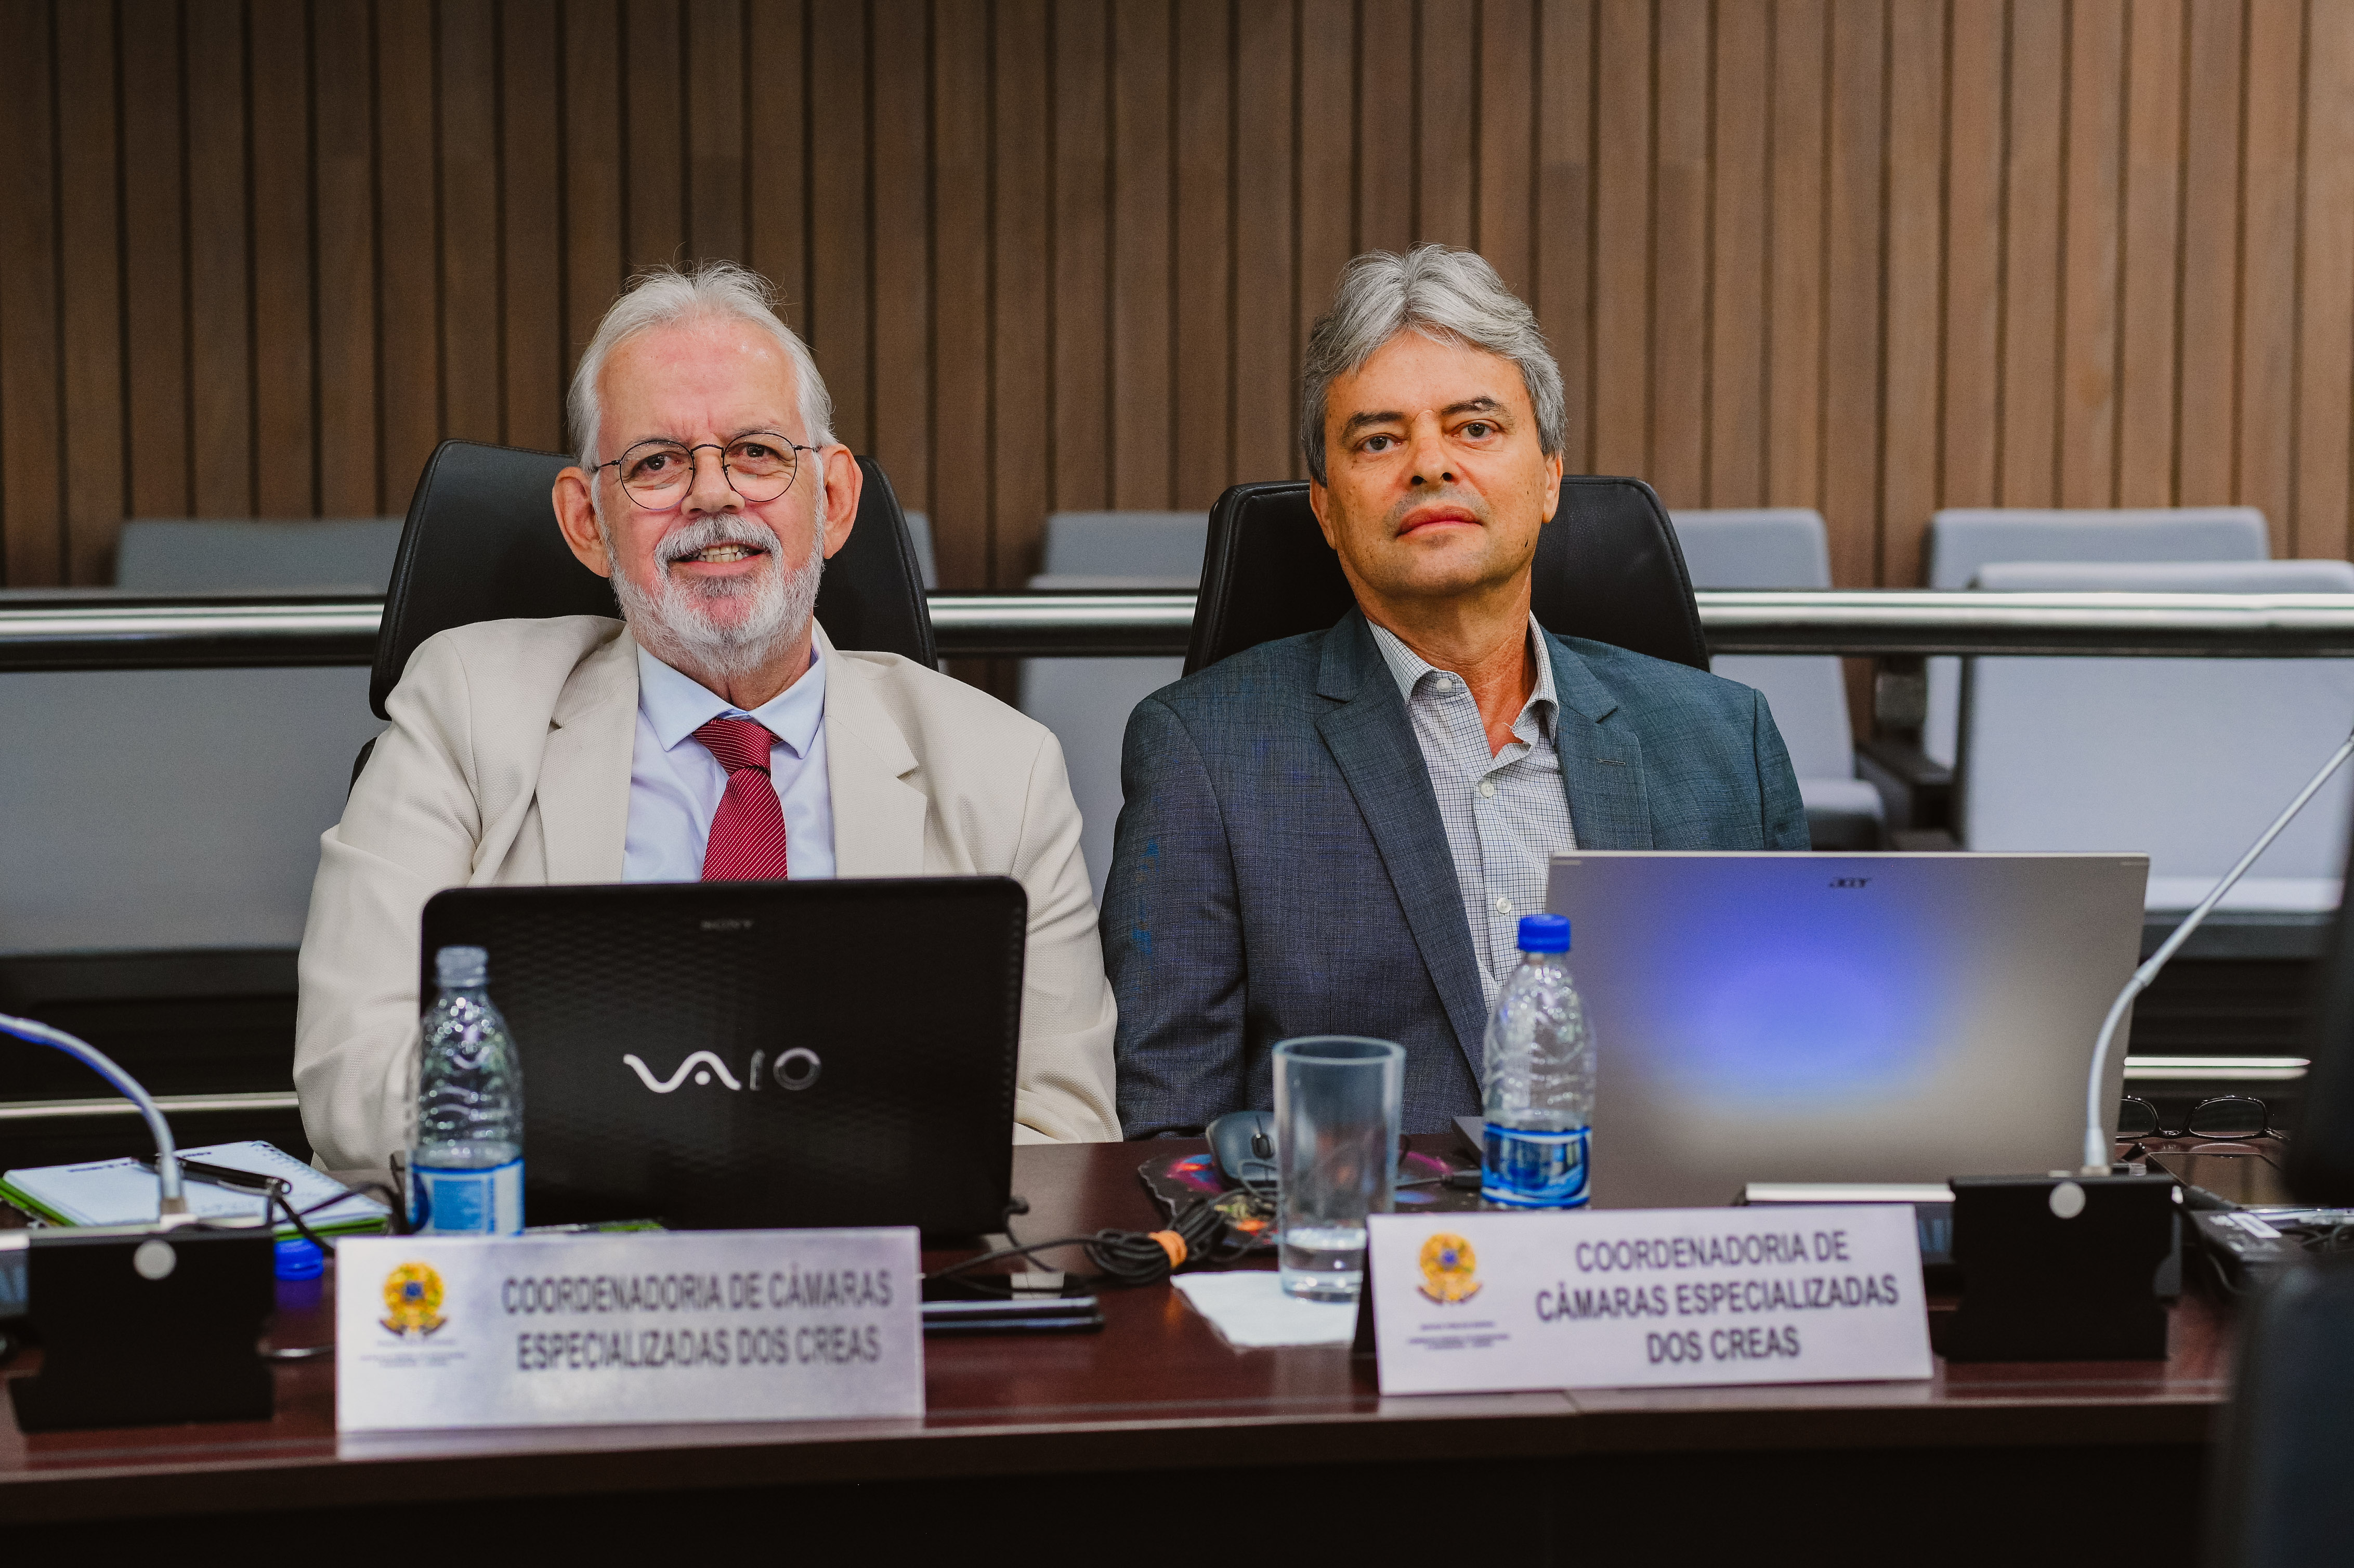 Coordenadores nacionais das câmaras especializadas de engenharias Civil, eng. Stenio Cuentro, e Química, Rodrigo Moure